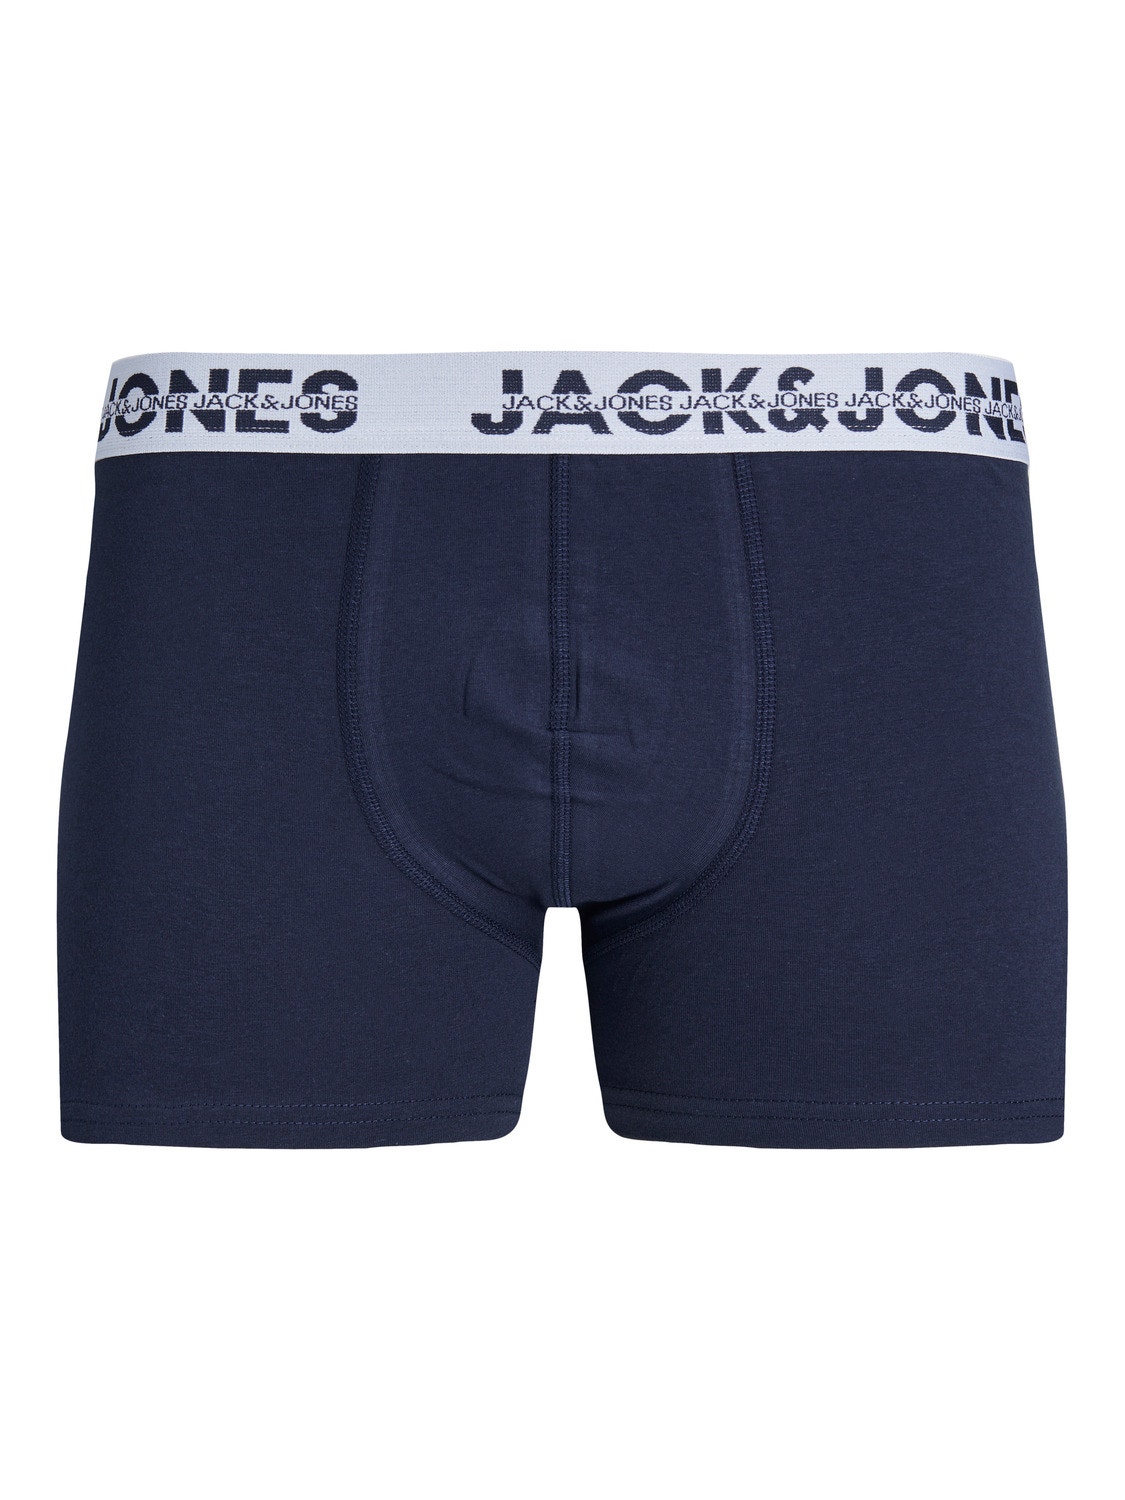 Jack & Jones 5-pack Trunks -Light Grey Melange - 12246310